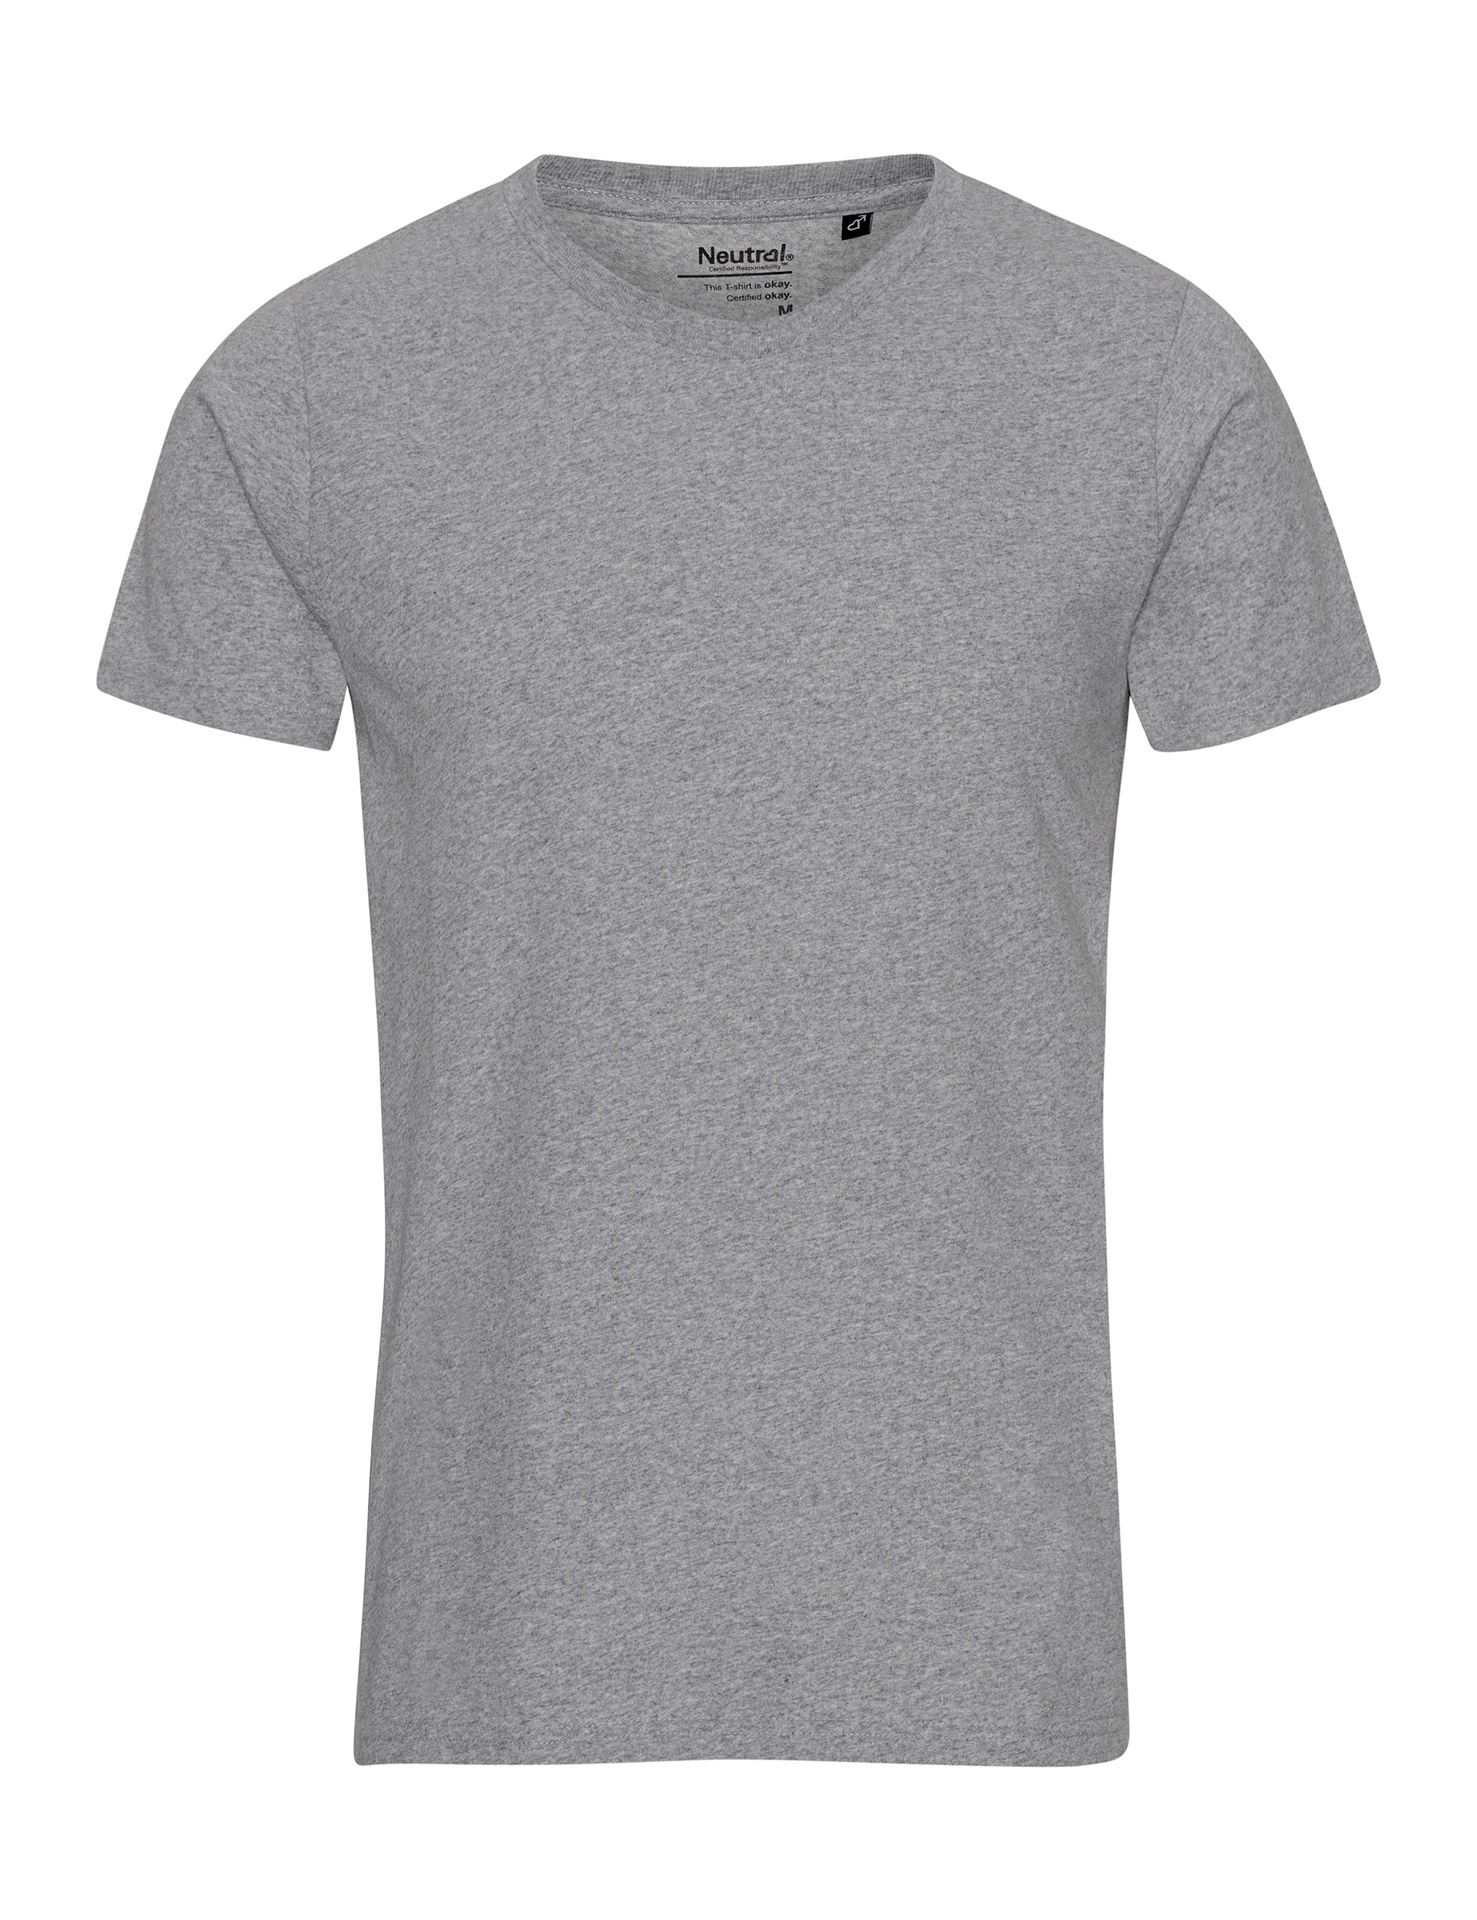 [PR/01042] Recycled Cotton T-Shirt (Grey Melange 23, M)